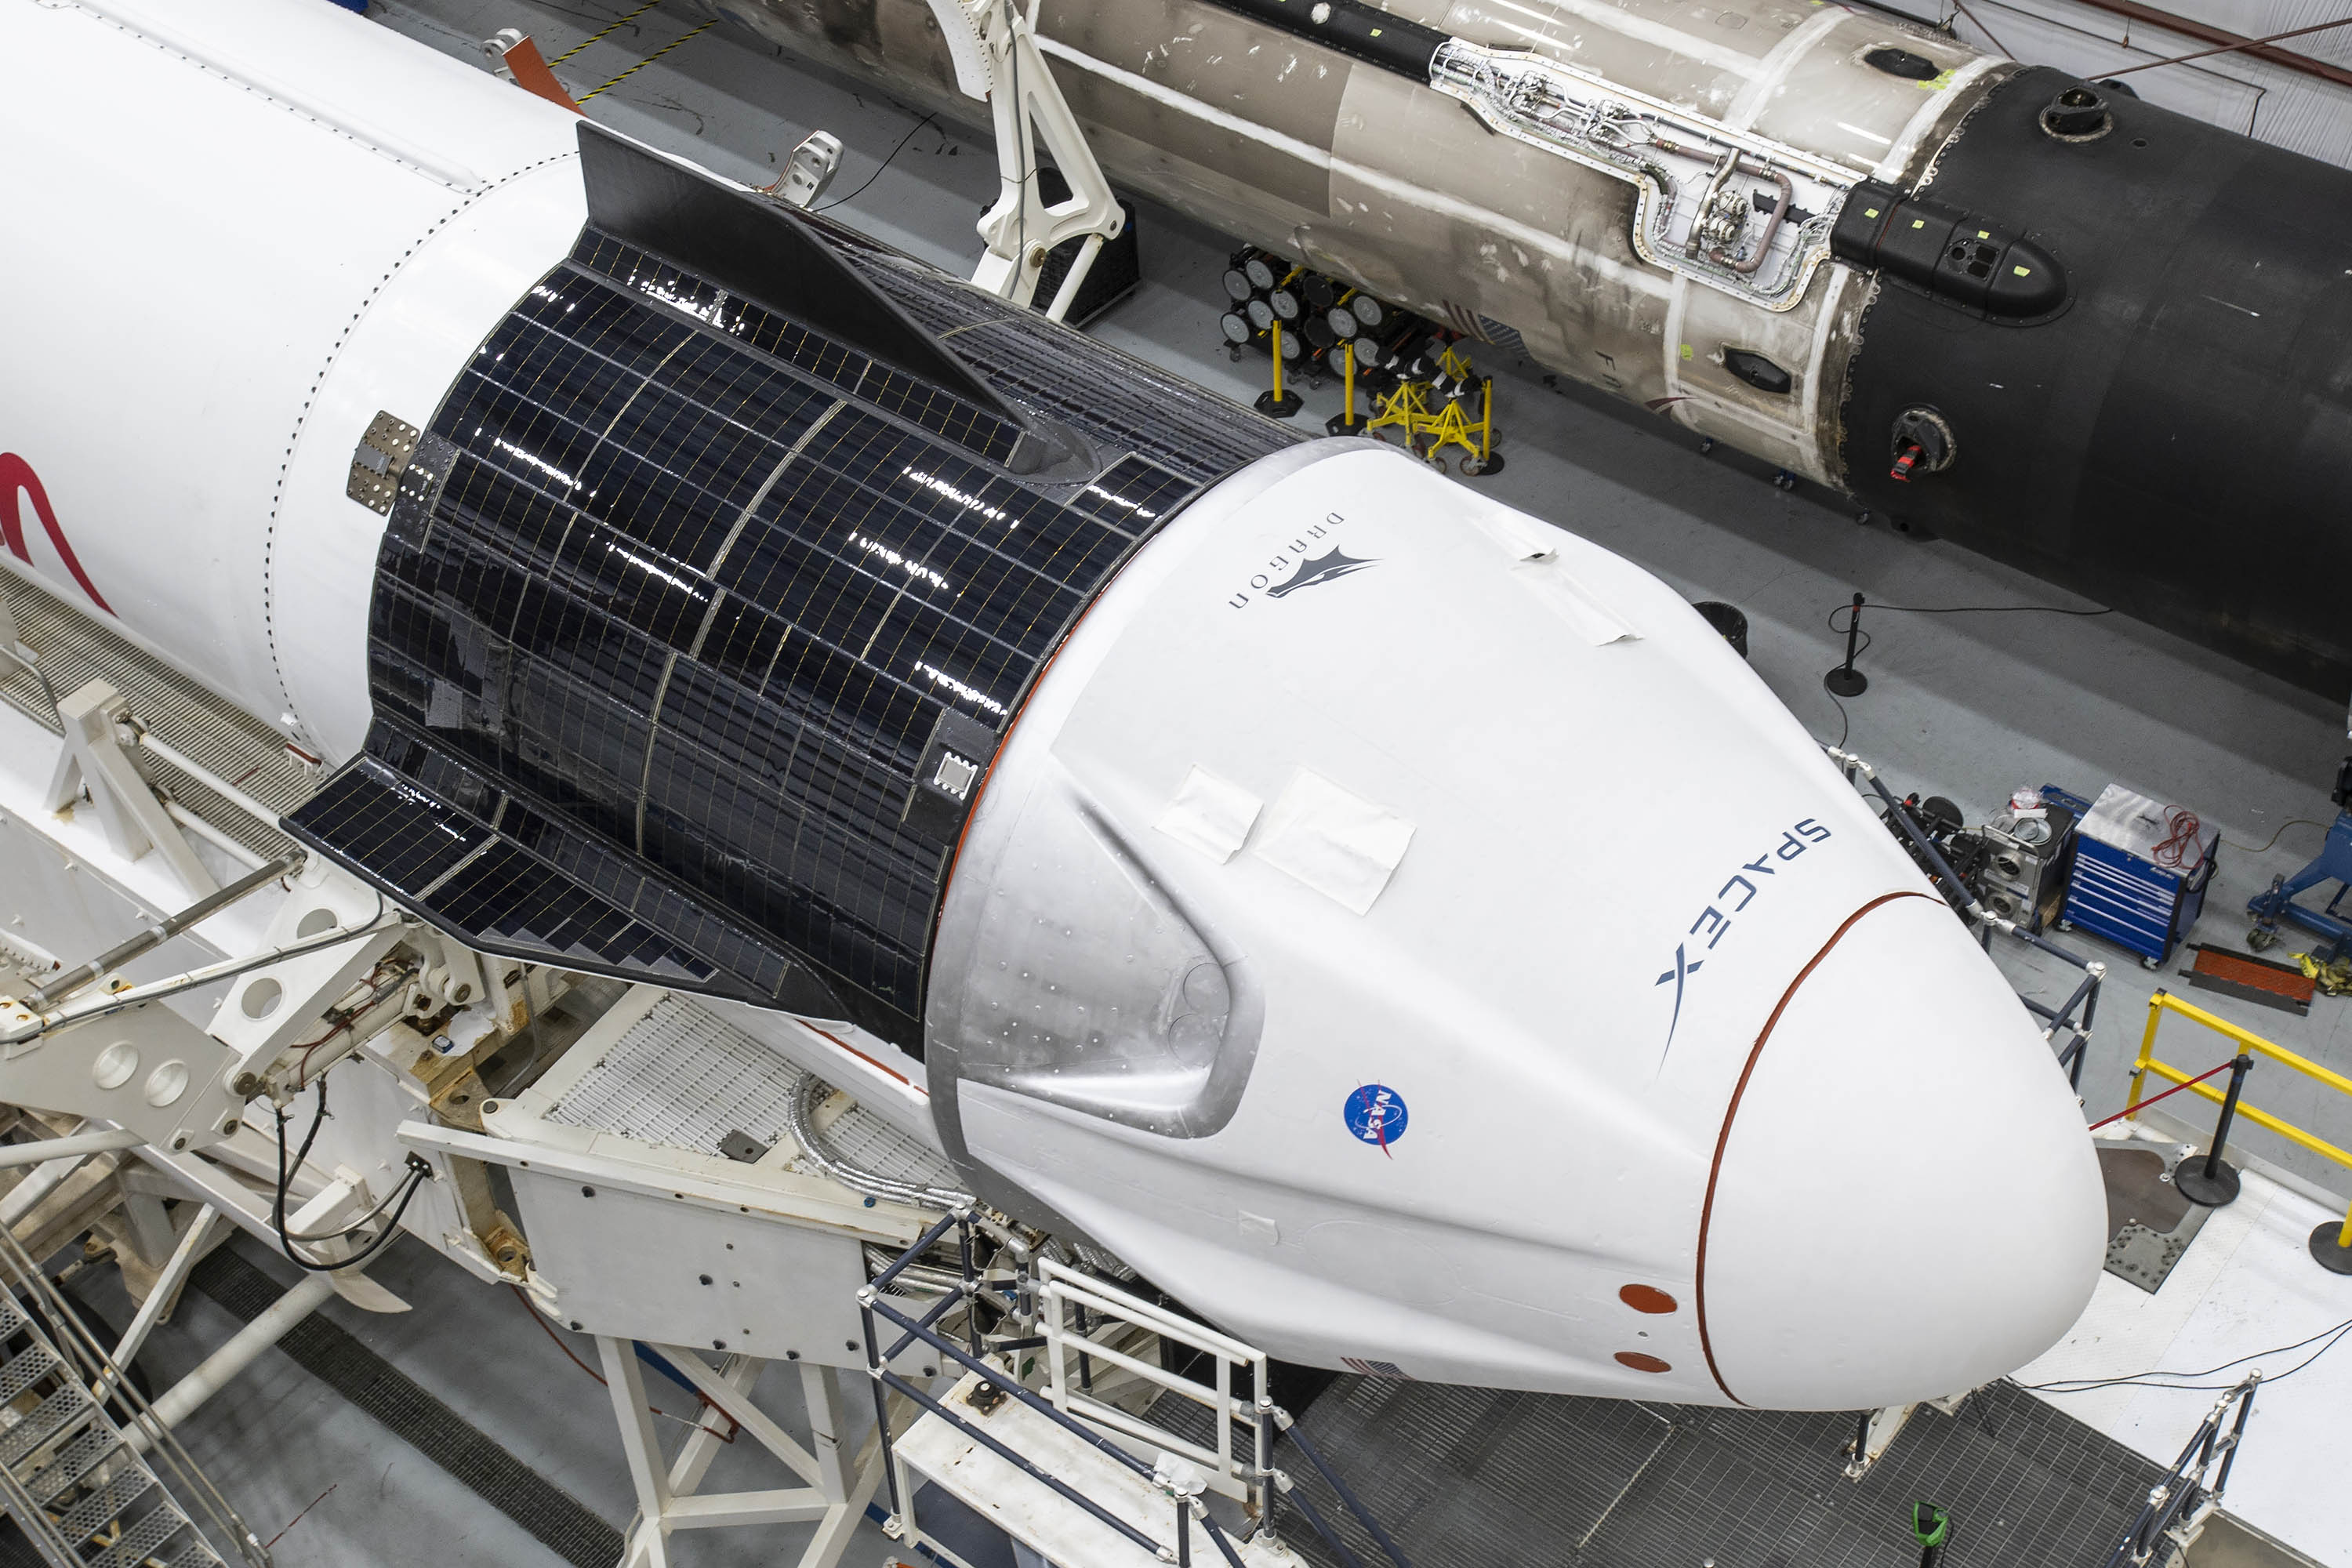 Towarowa kapsuła Dragon 2 podczas przygotowań do startu (Źródło: NASA Kennedy/SpaceX)